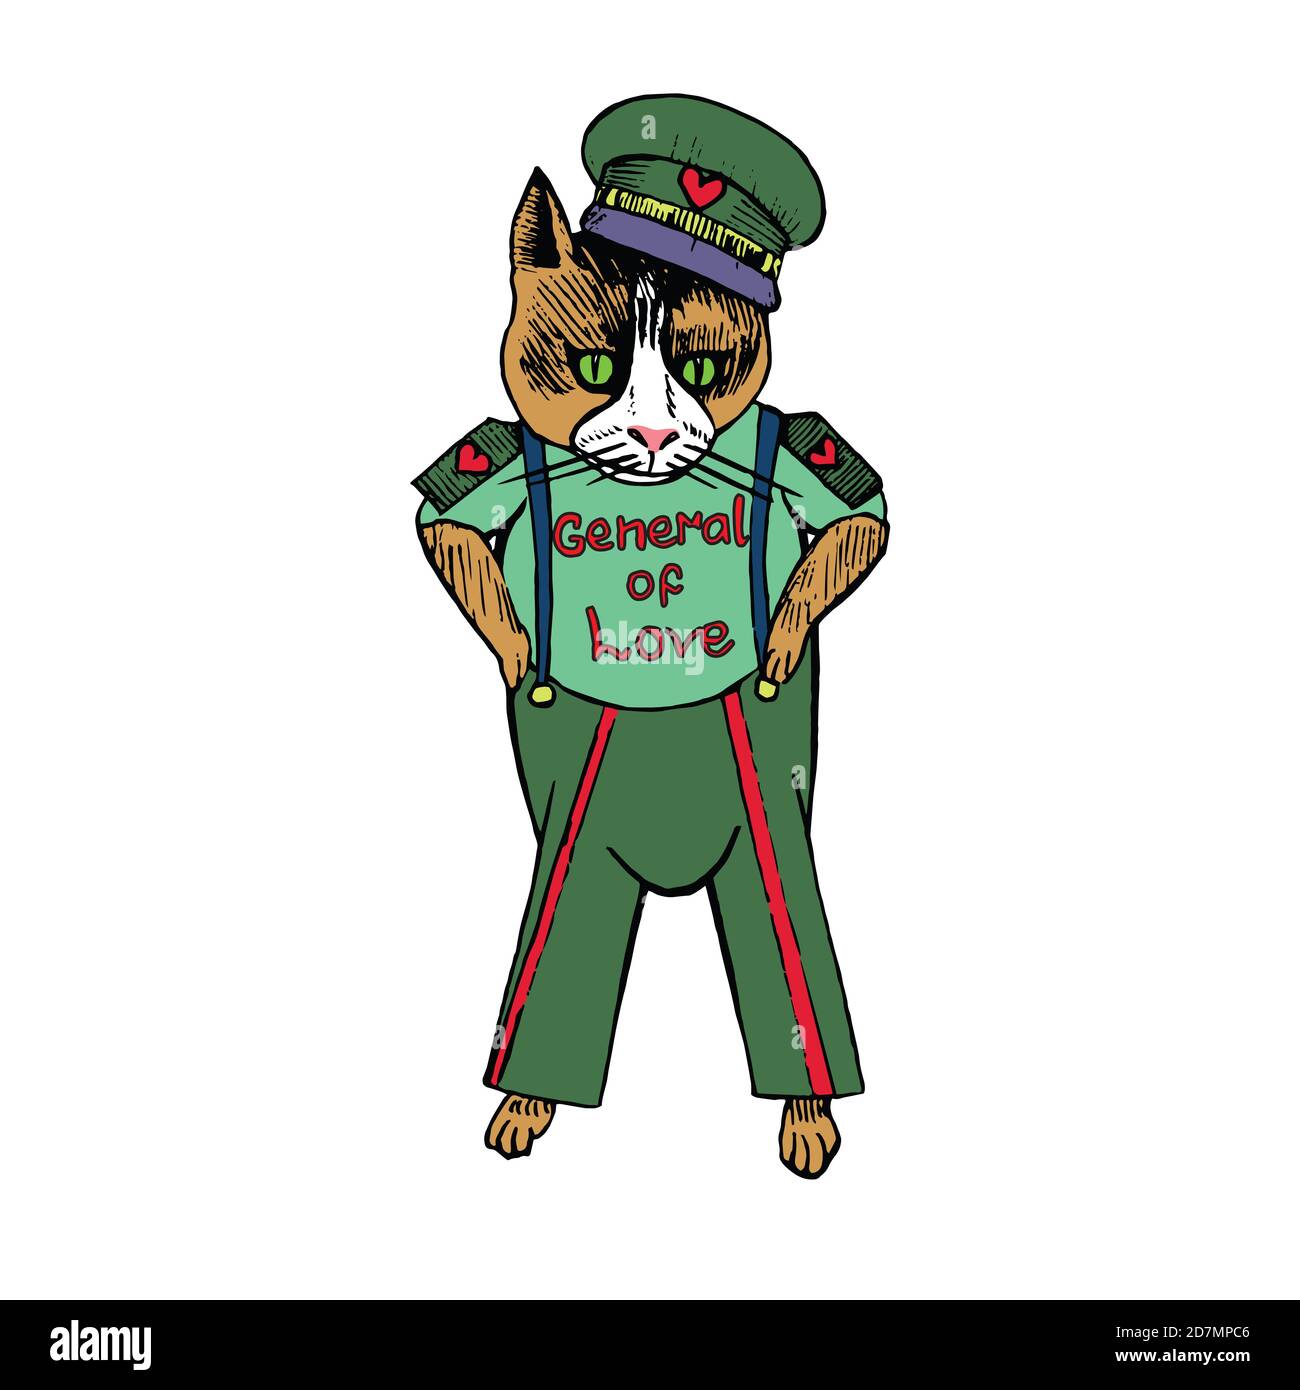 Zeichentrickfigur der funky Katze in sowjetischer Militärform mit Inschrift "General der Liebe", handgezeichnete Doodle-Skizze, isolierte Farbillustratio Stockfoto